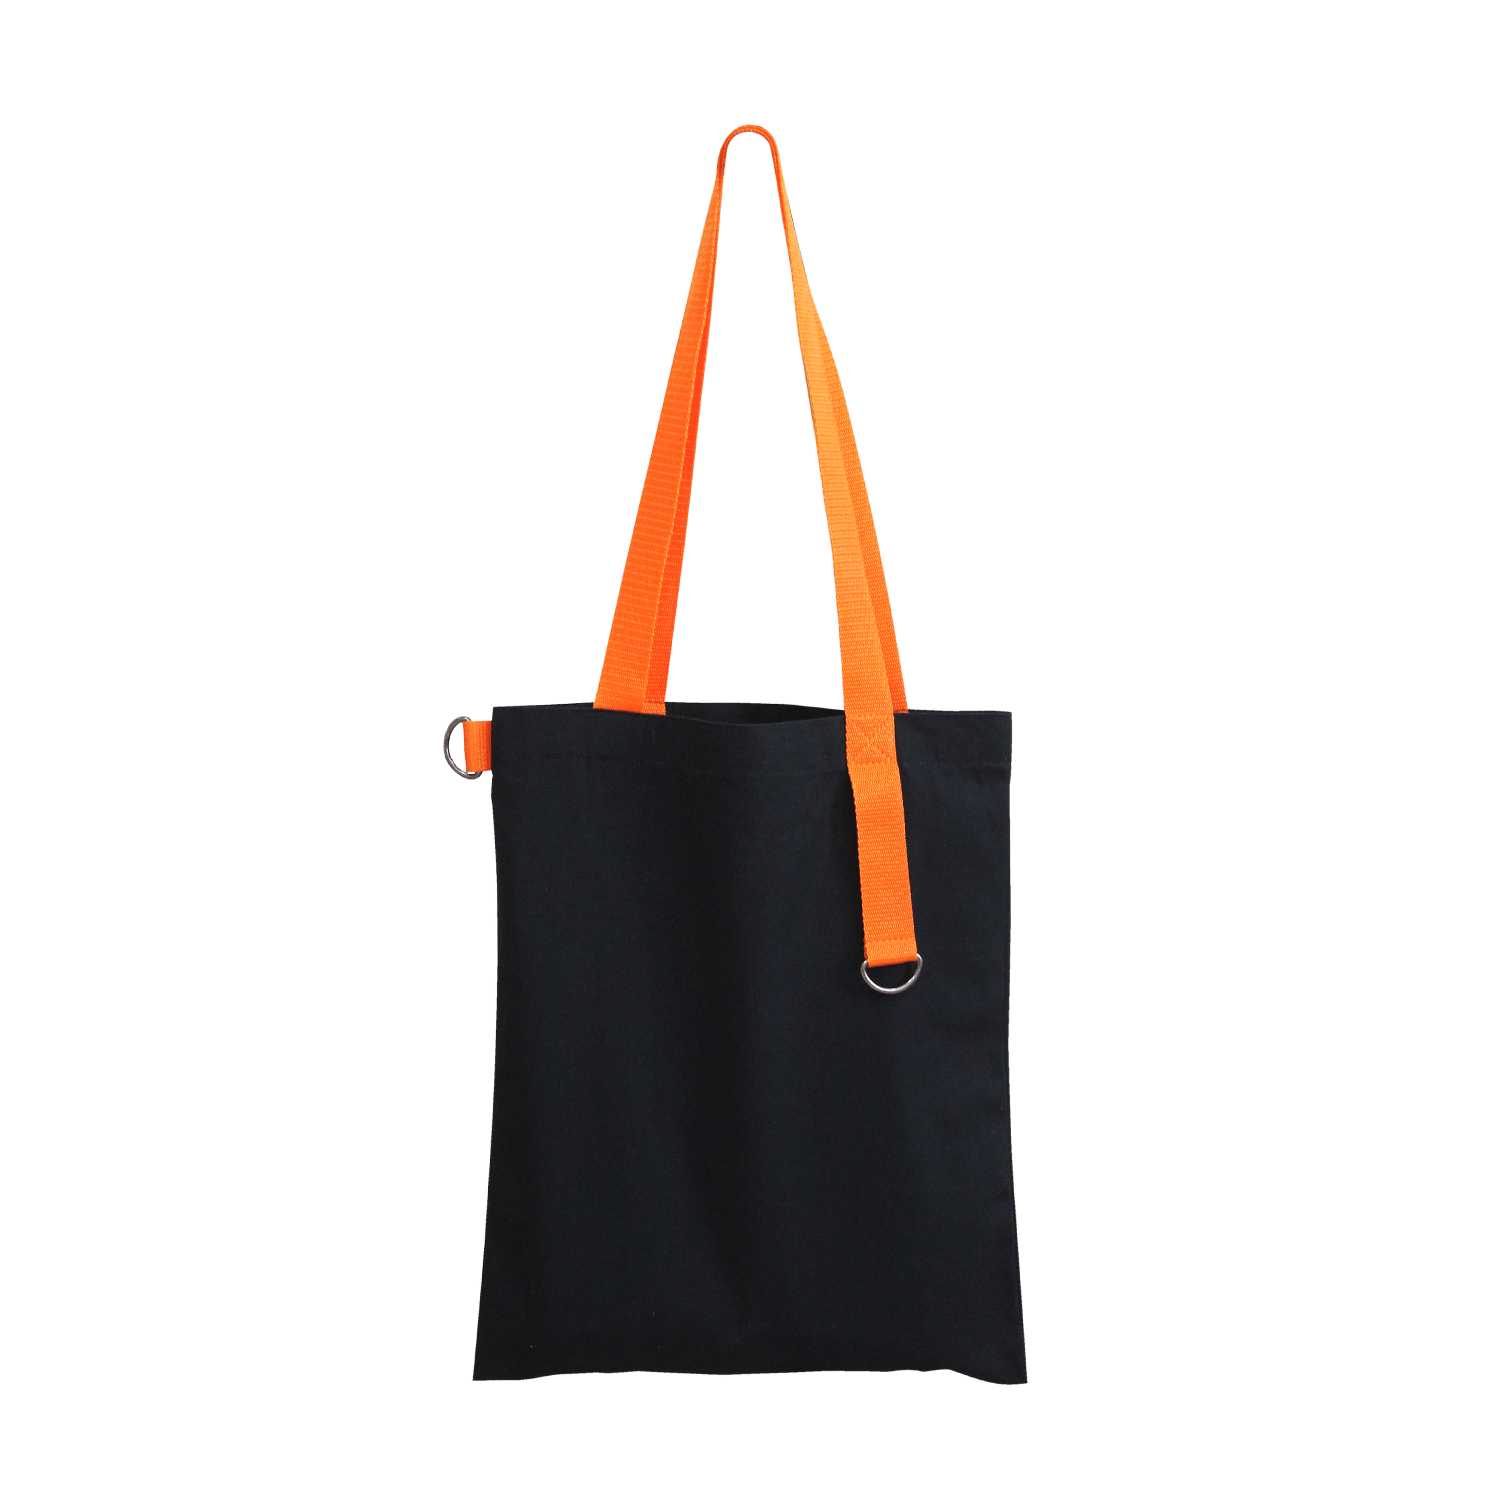 Набор Cofer Bag 5000 (оранжевый с чёрным), soft touch